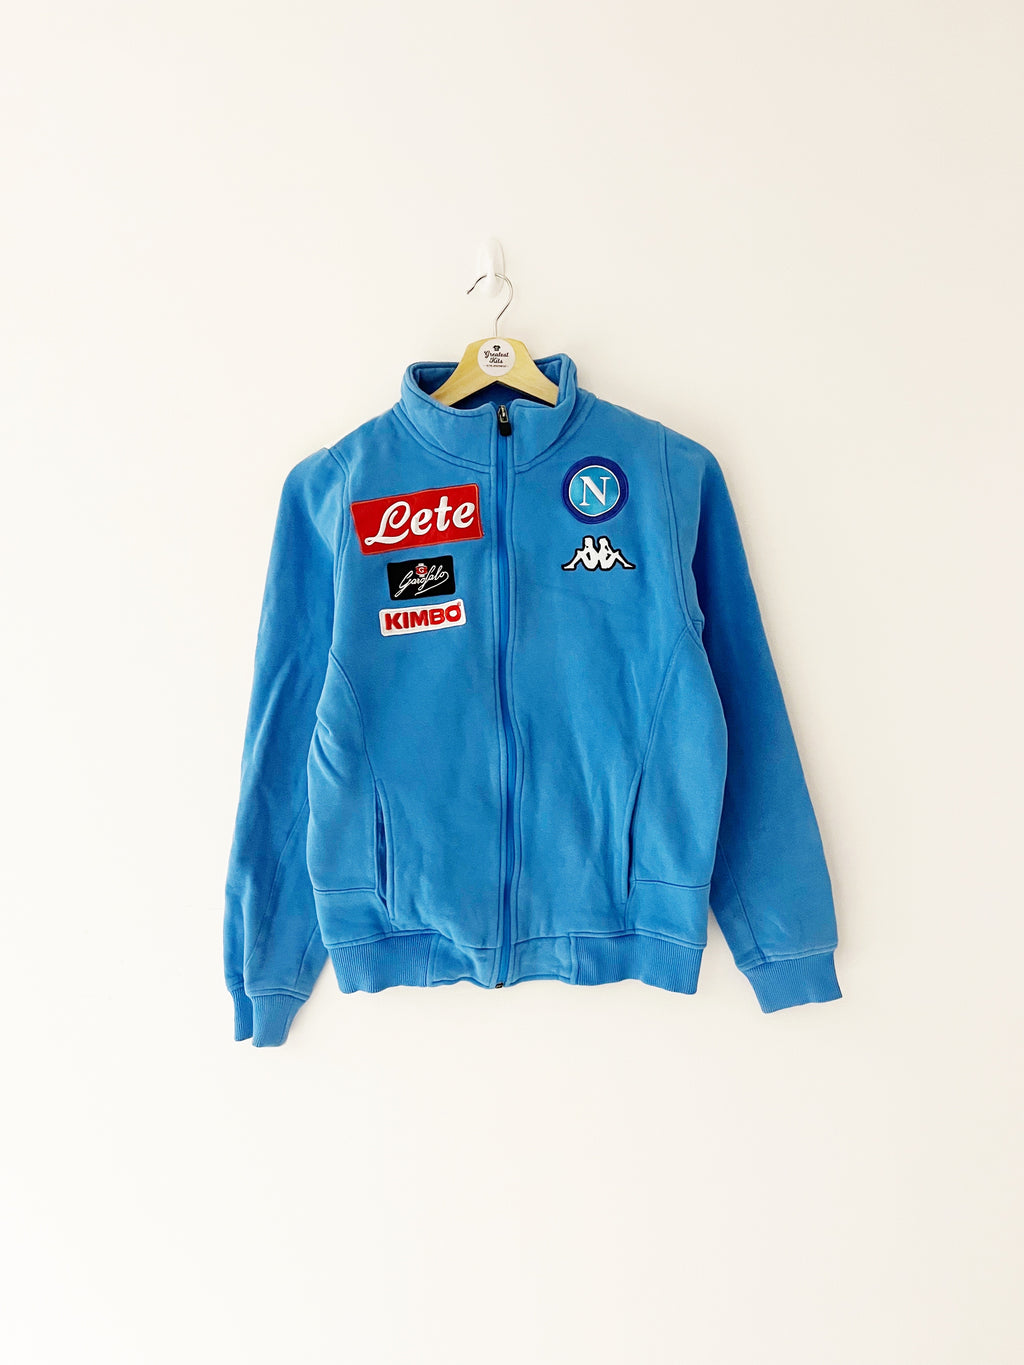 2015/16 Napoli Training Jacket (S) 8.5/10